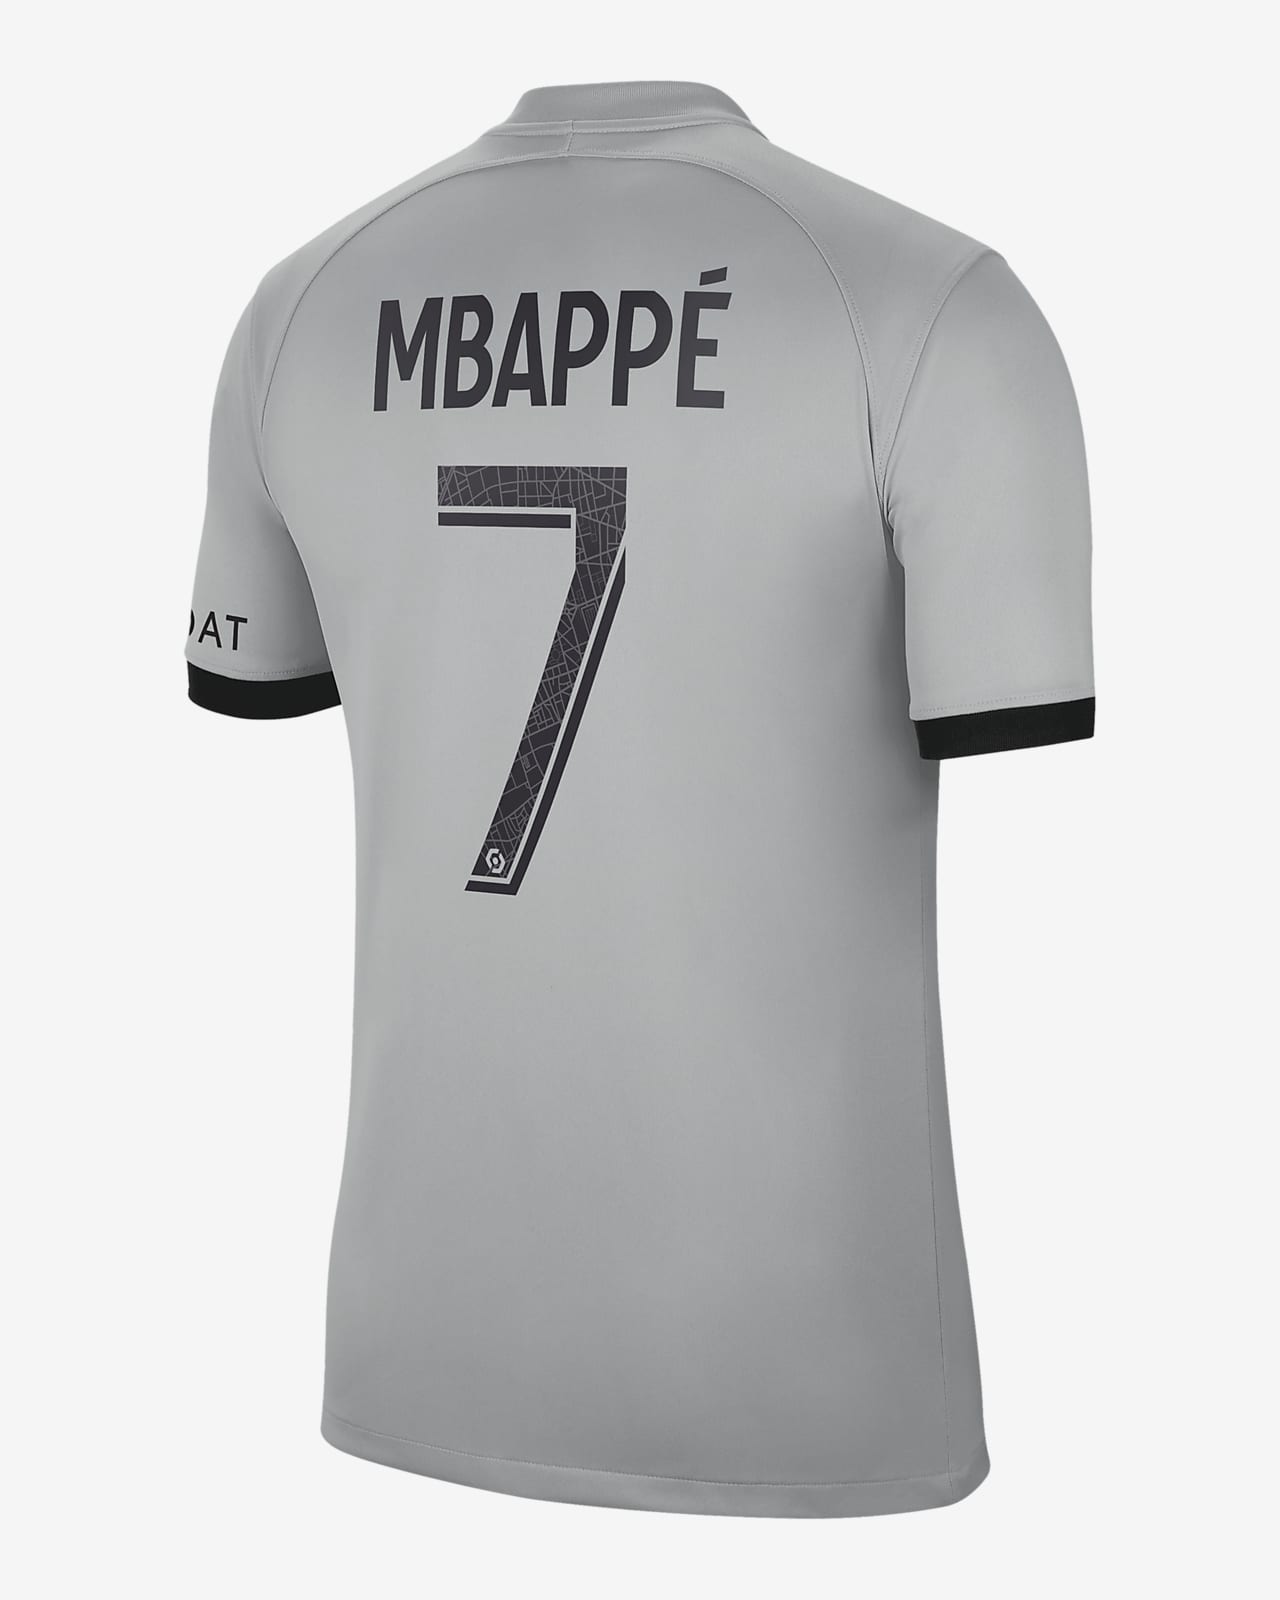 Tenue PSG Football Mbappé Domicile 2021-2022 - Kids-116